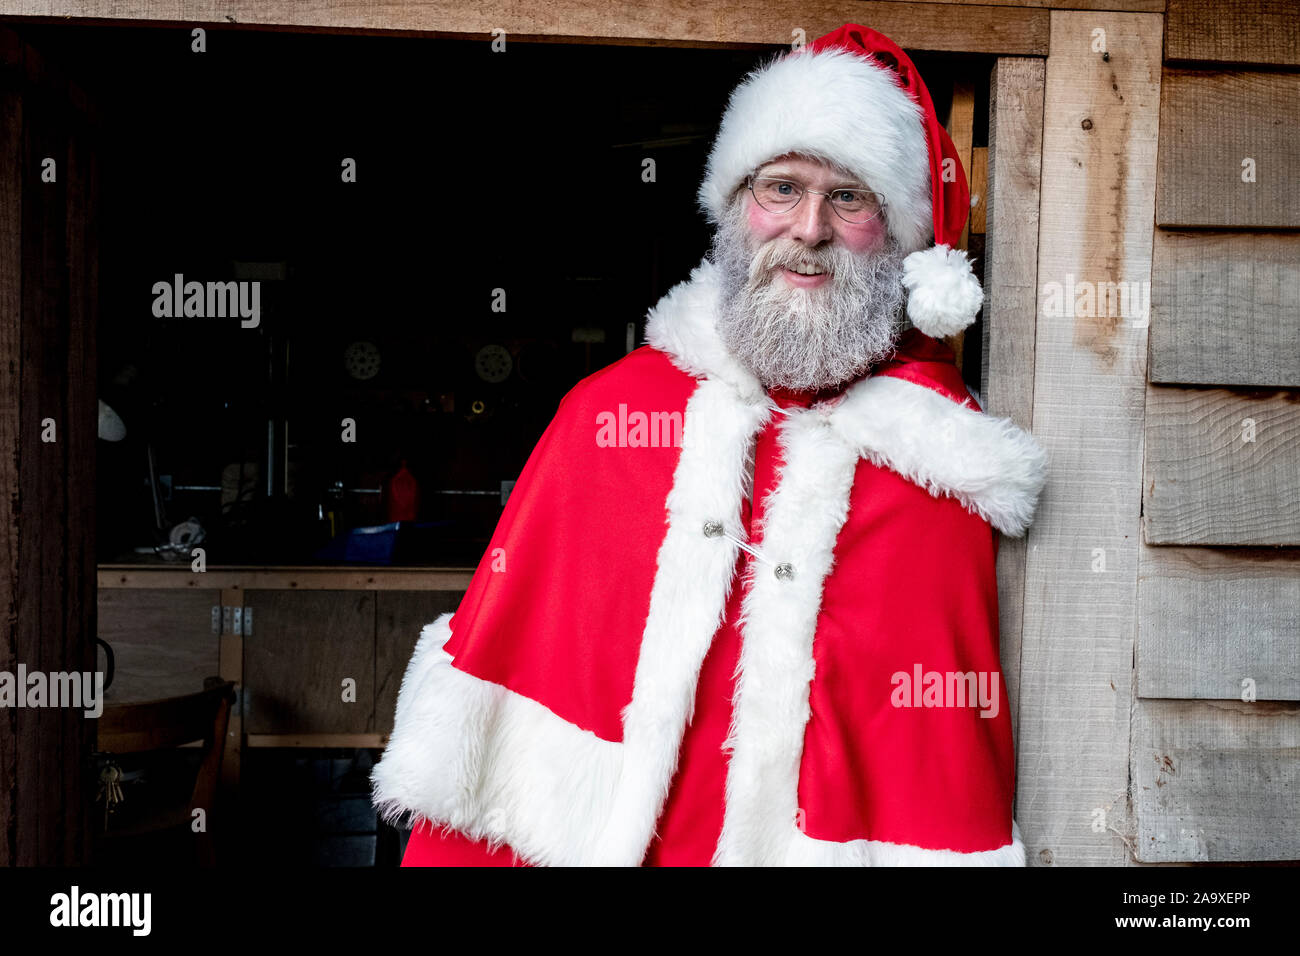 Homme portant un costume de Père Noël à l'atelier permanent de la porte, regardant la caméra. Banque D'Images